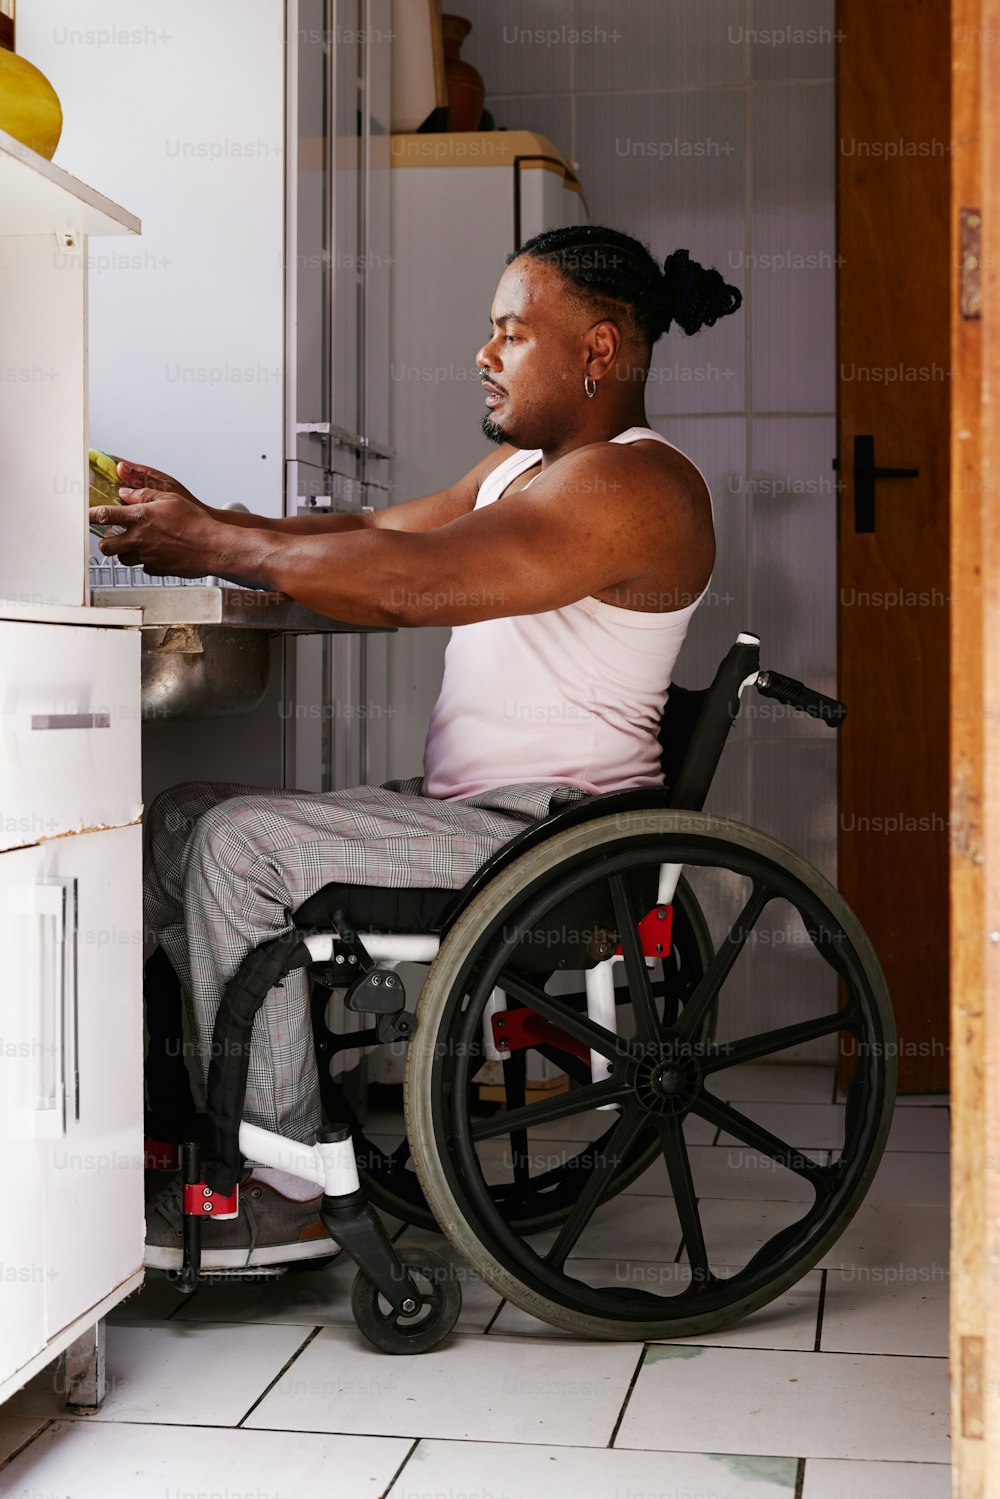 Una donna in una sedia a rotelle in una cucina